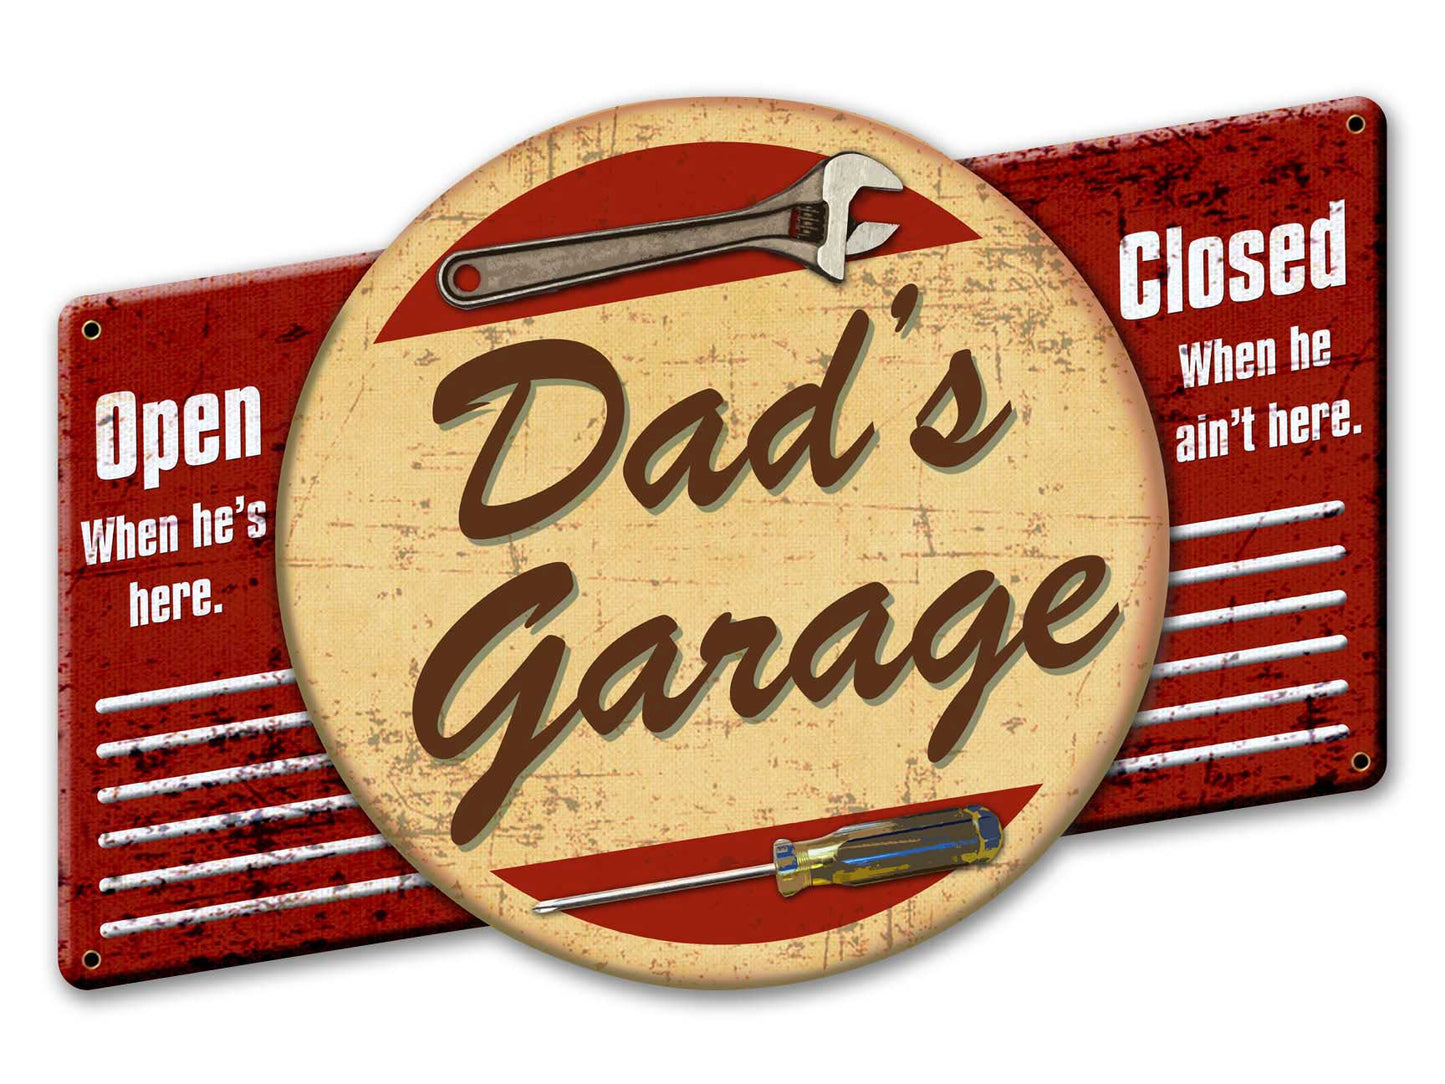 Dad's Garage Vintage Sign